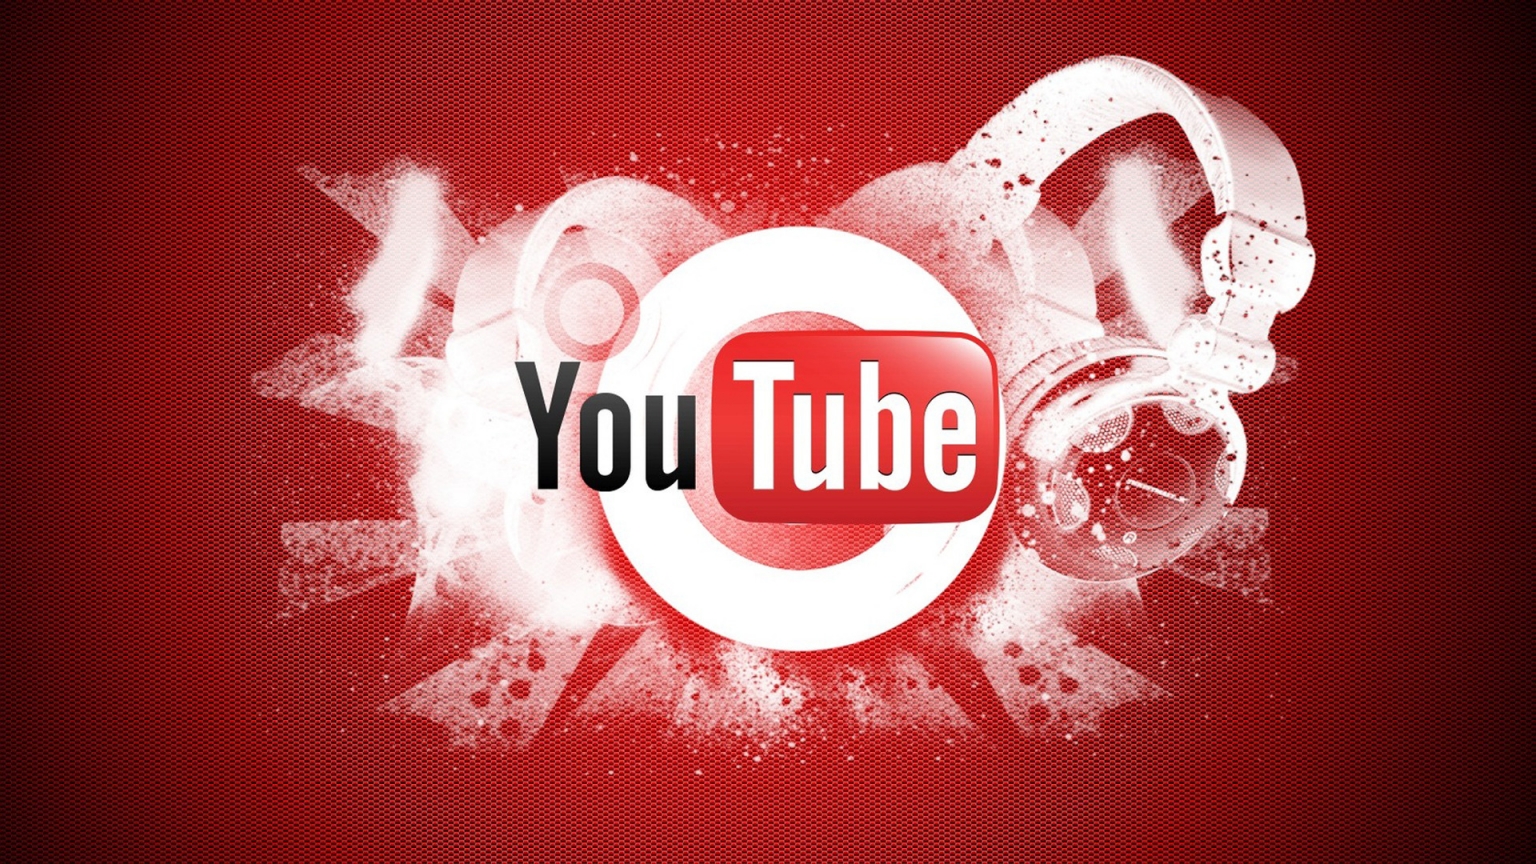 YouTube Logo for 1536 x 864 HDTV resolution